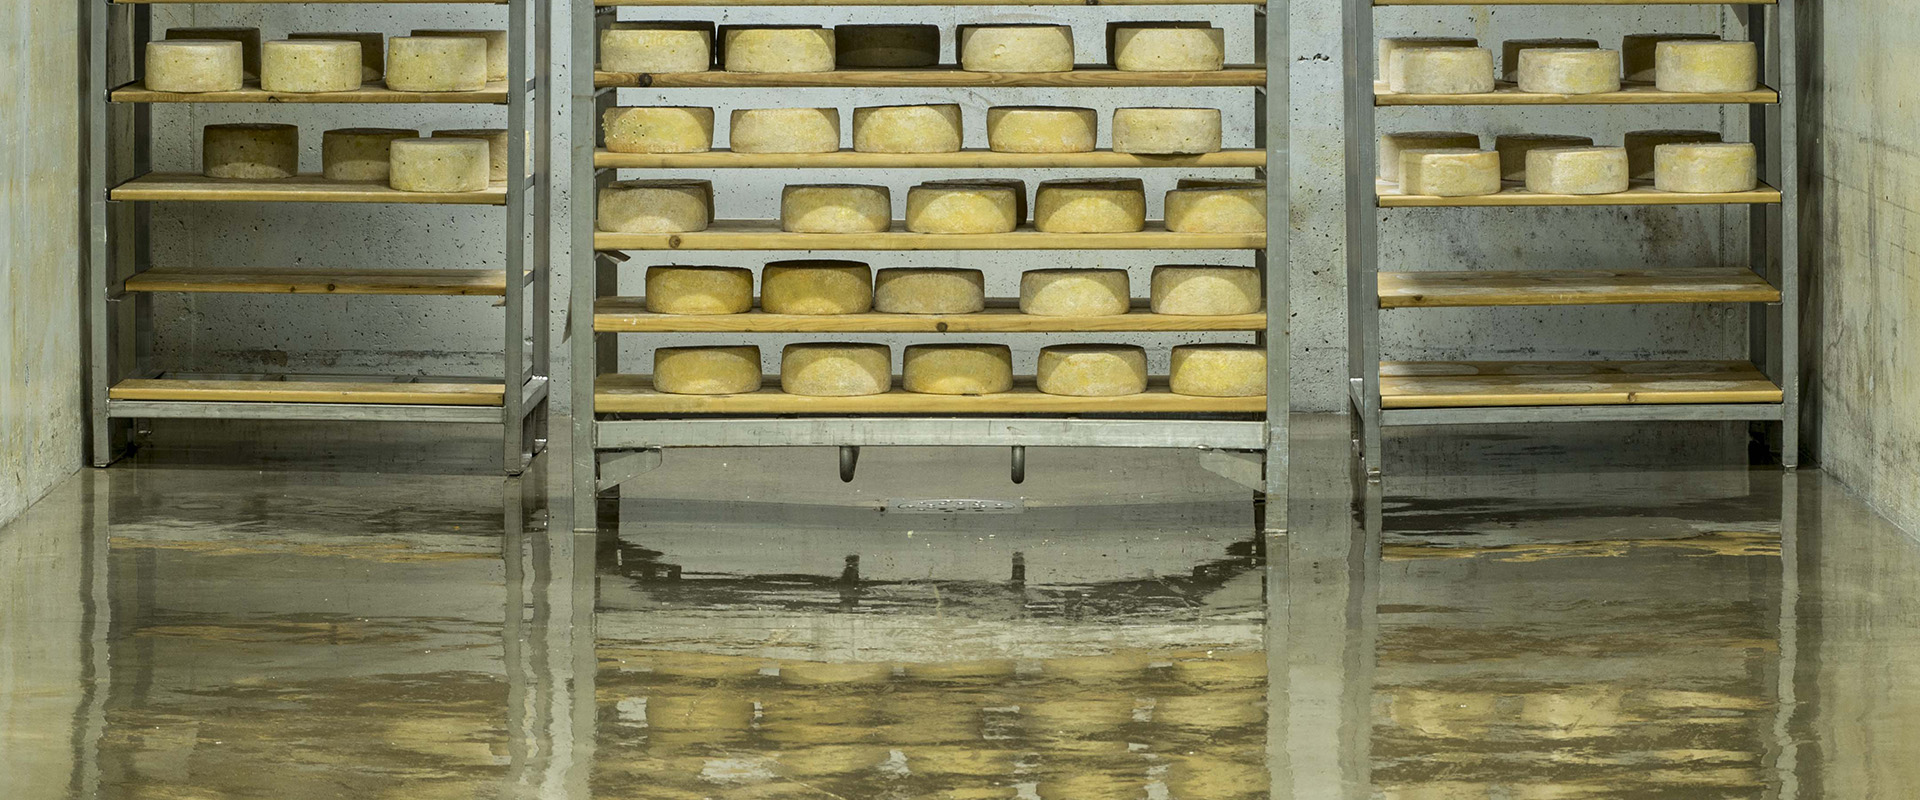 formaggi che fermentano